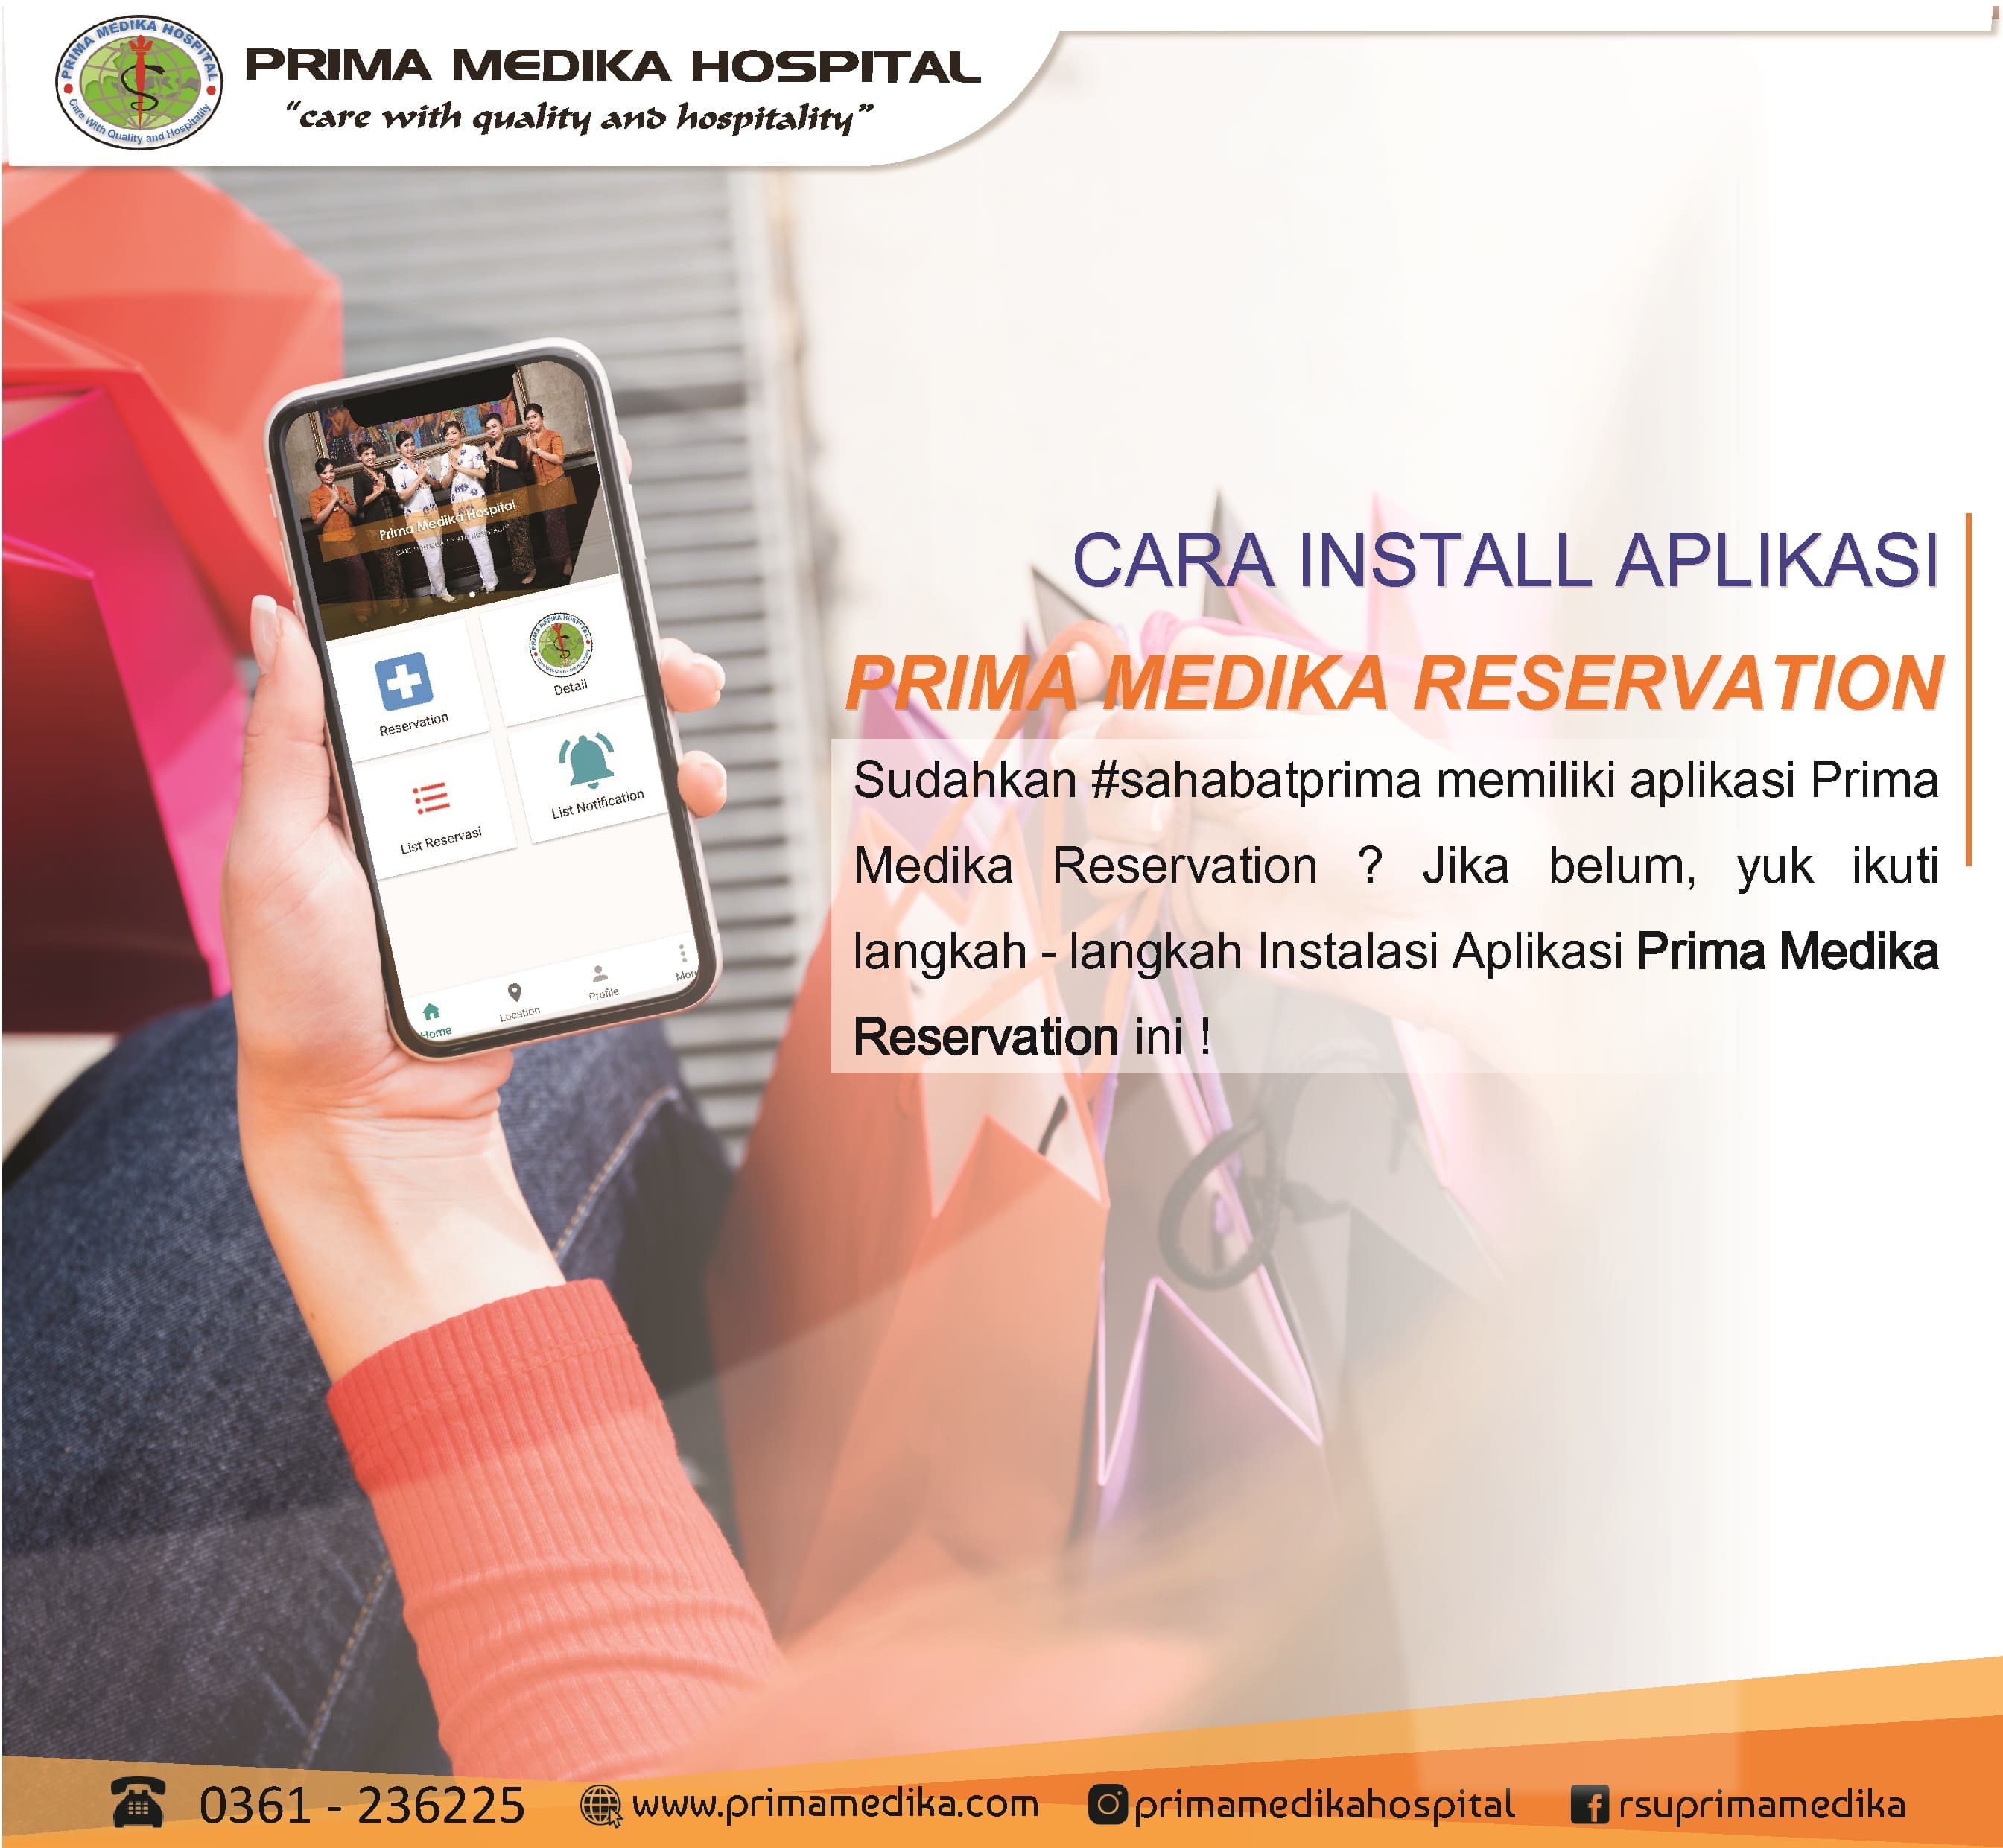 Tata Cara Install Aplikasi "Prima Medika Reservation" yuk simak !